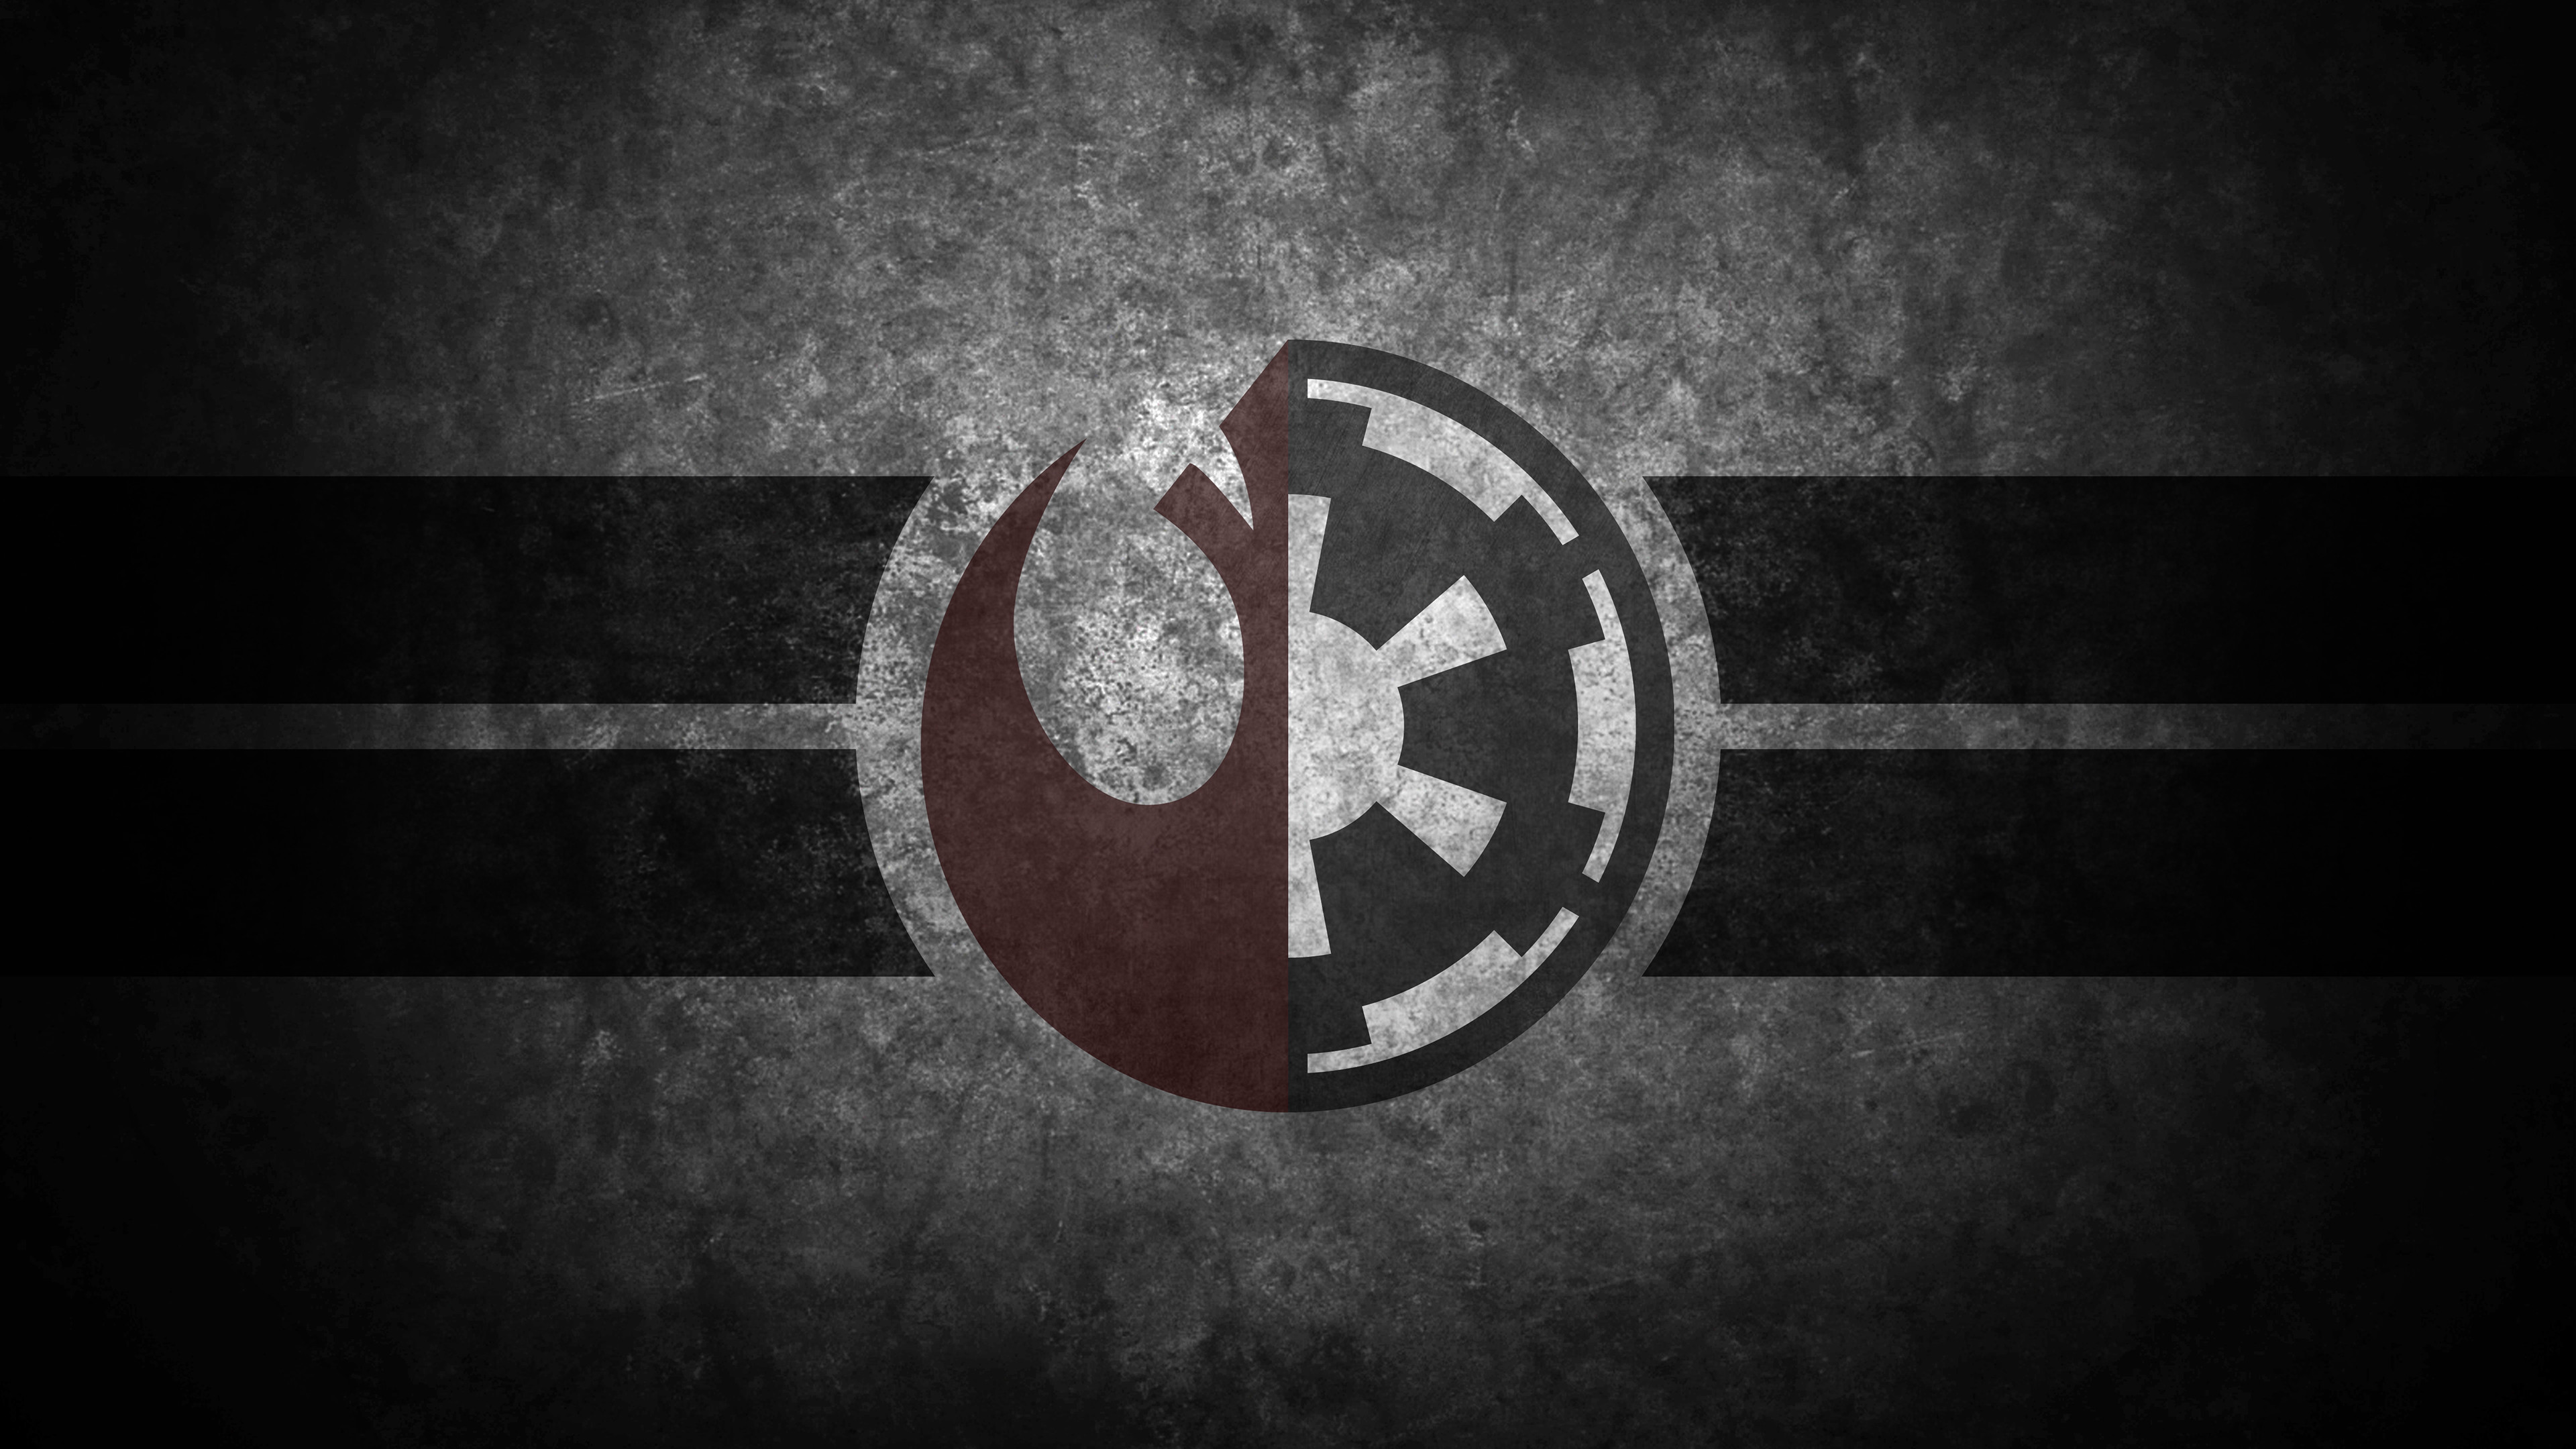 3840x2160 Star Wars Empire Logo Wallpaper